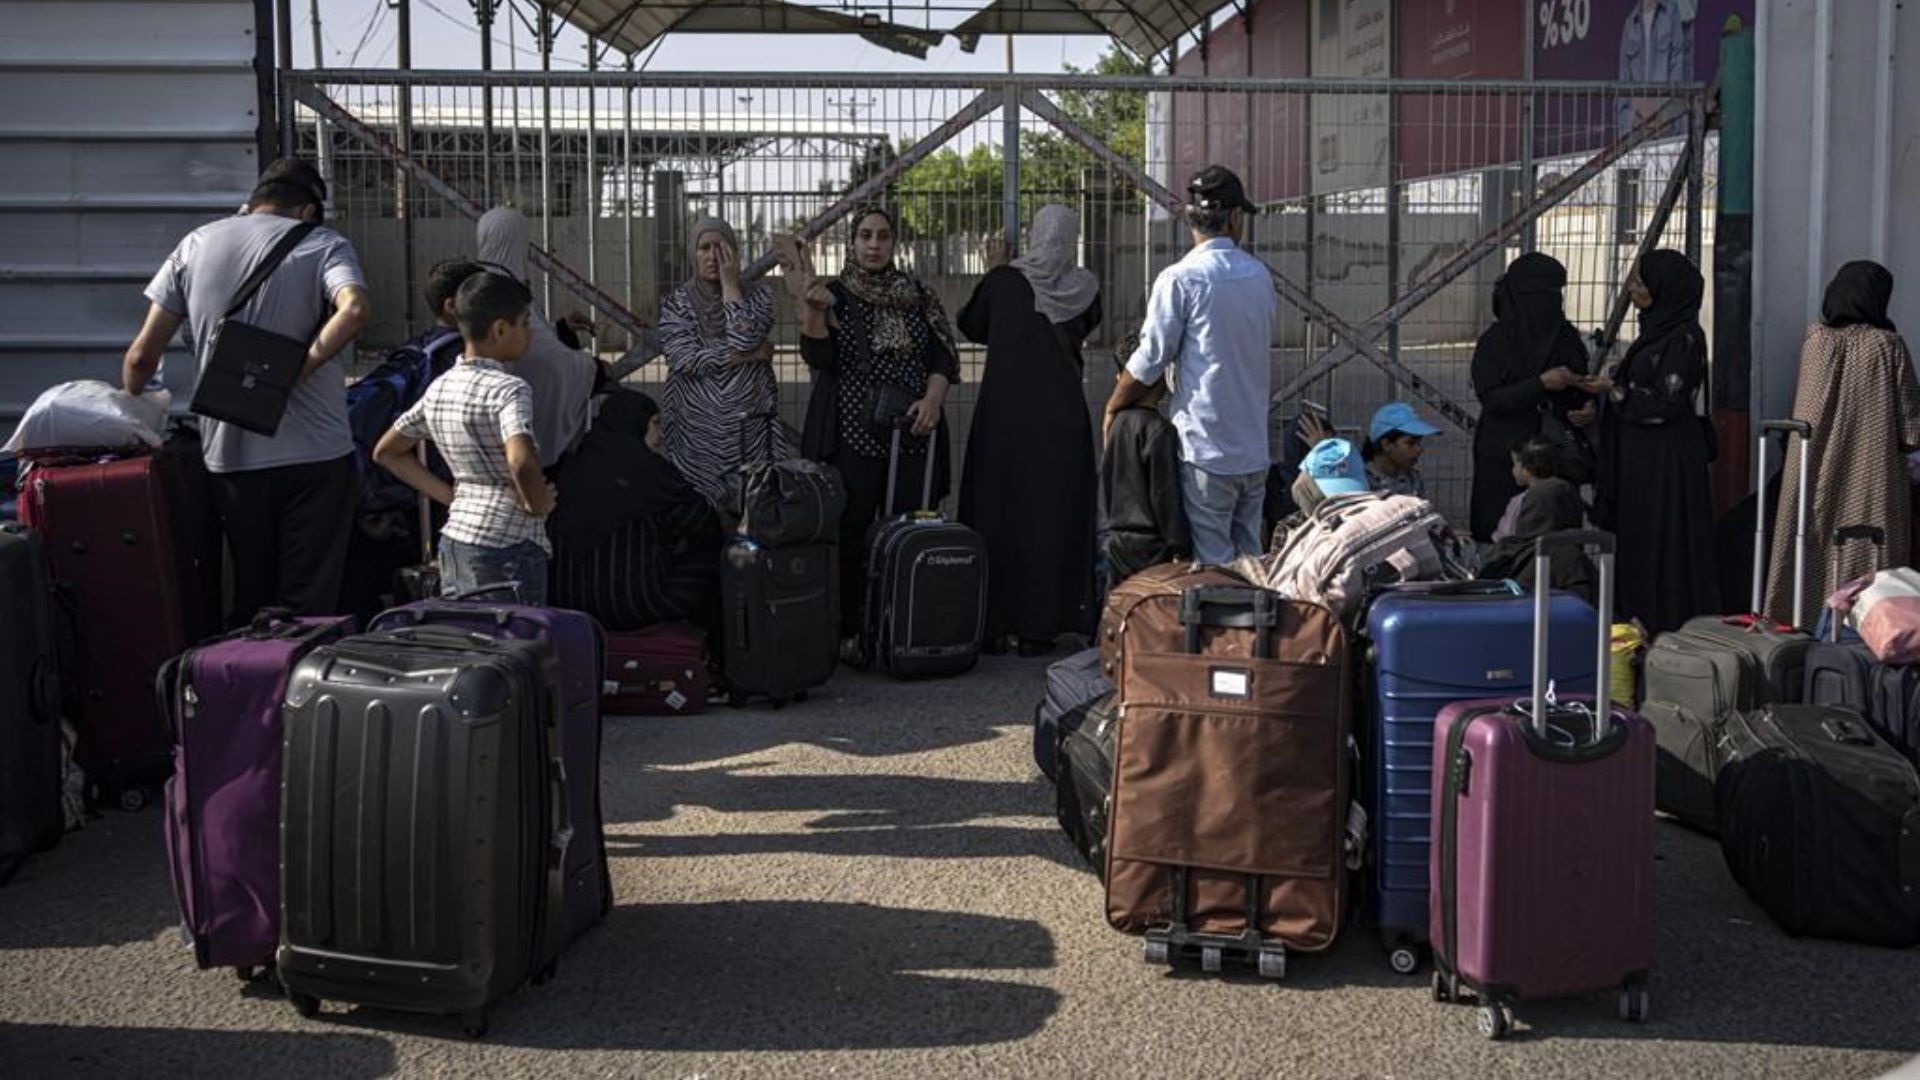 Affaires mondiales Canada assure que des agents consulaires sont présents à la frontière pour aider les ressortissants canadiens à se rendre en autobus jusqu'au Caire et, ensuite, à les aider à poursuivre leur voyage vers le Canada.